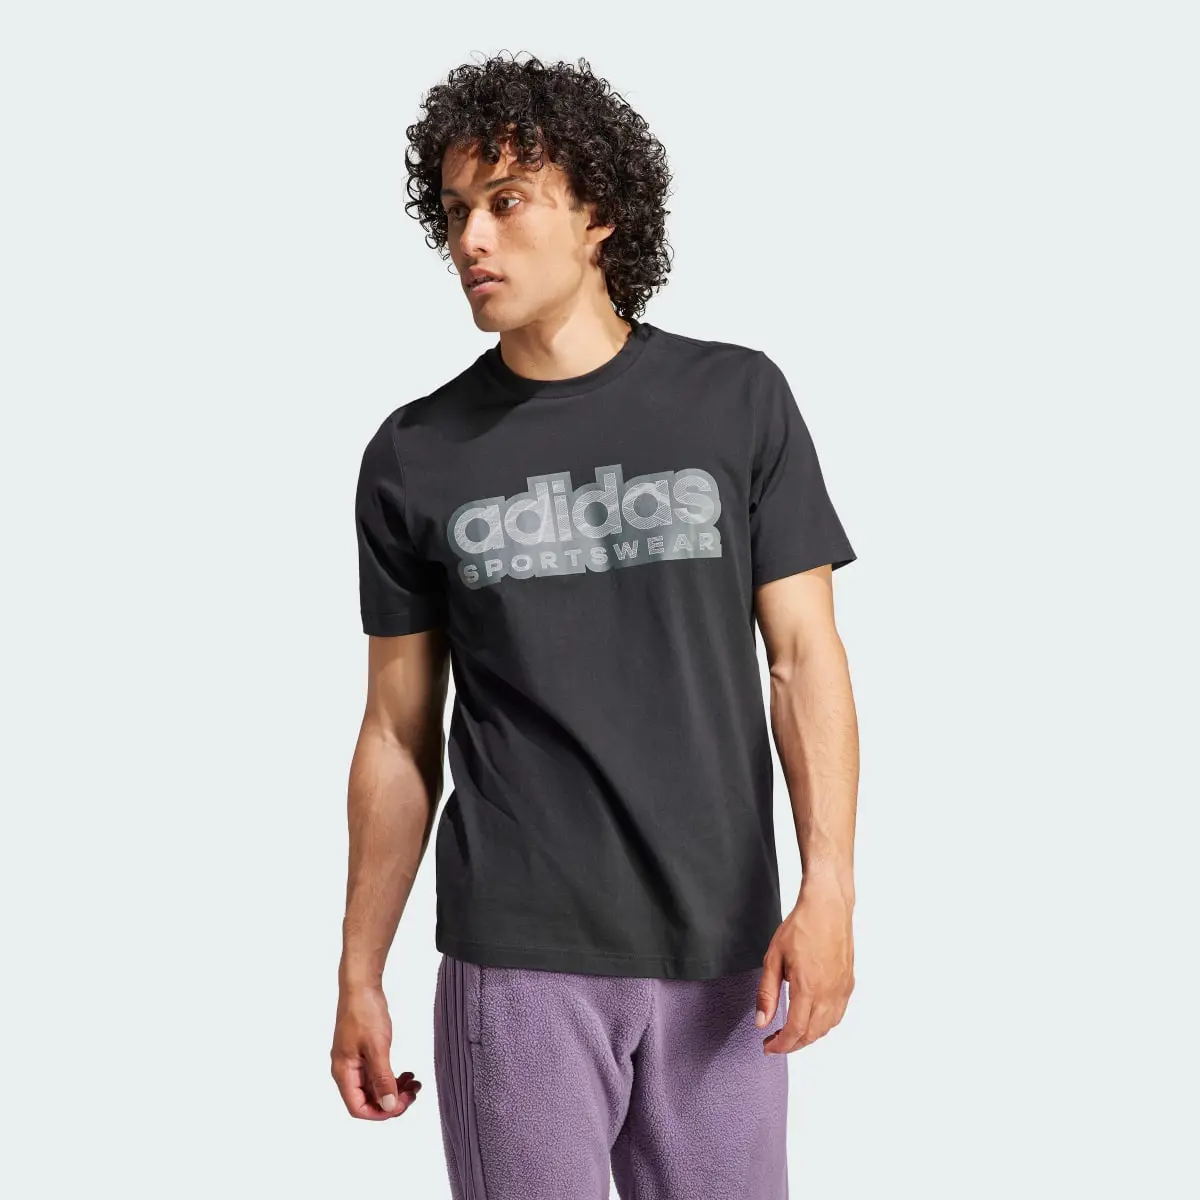 Adidas Tiro Graphic T-Shirt. 2